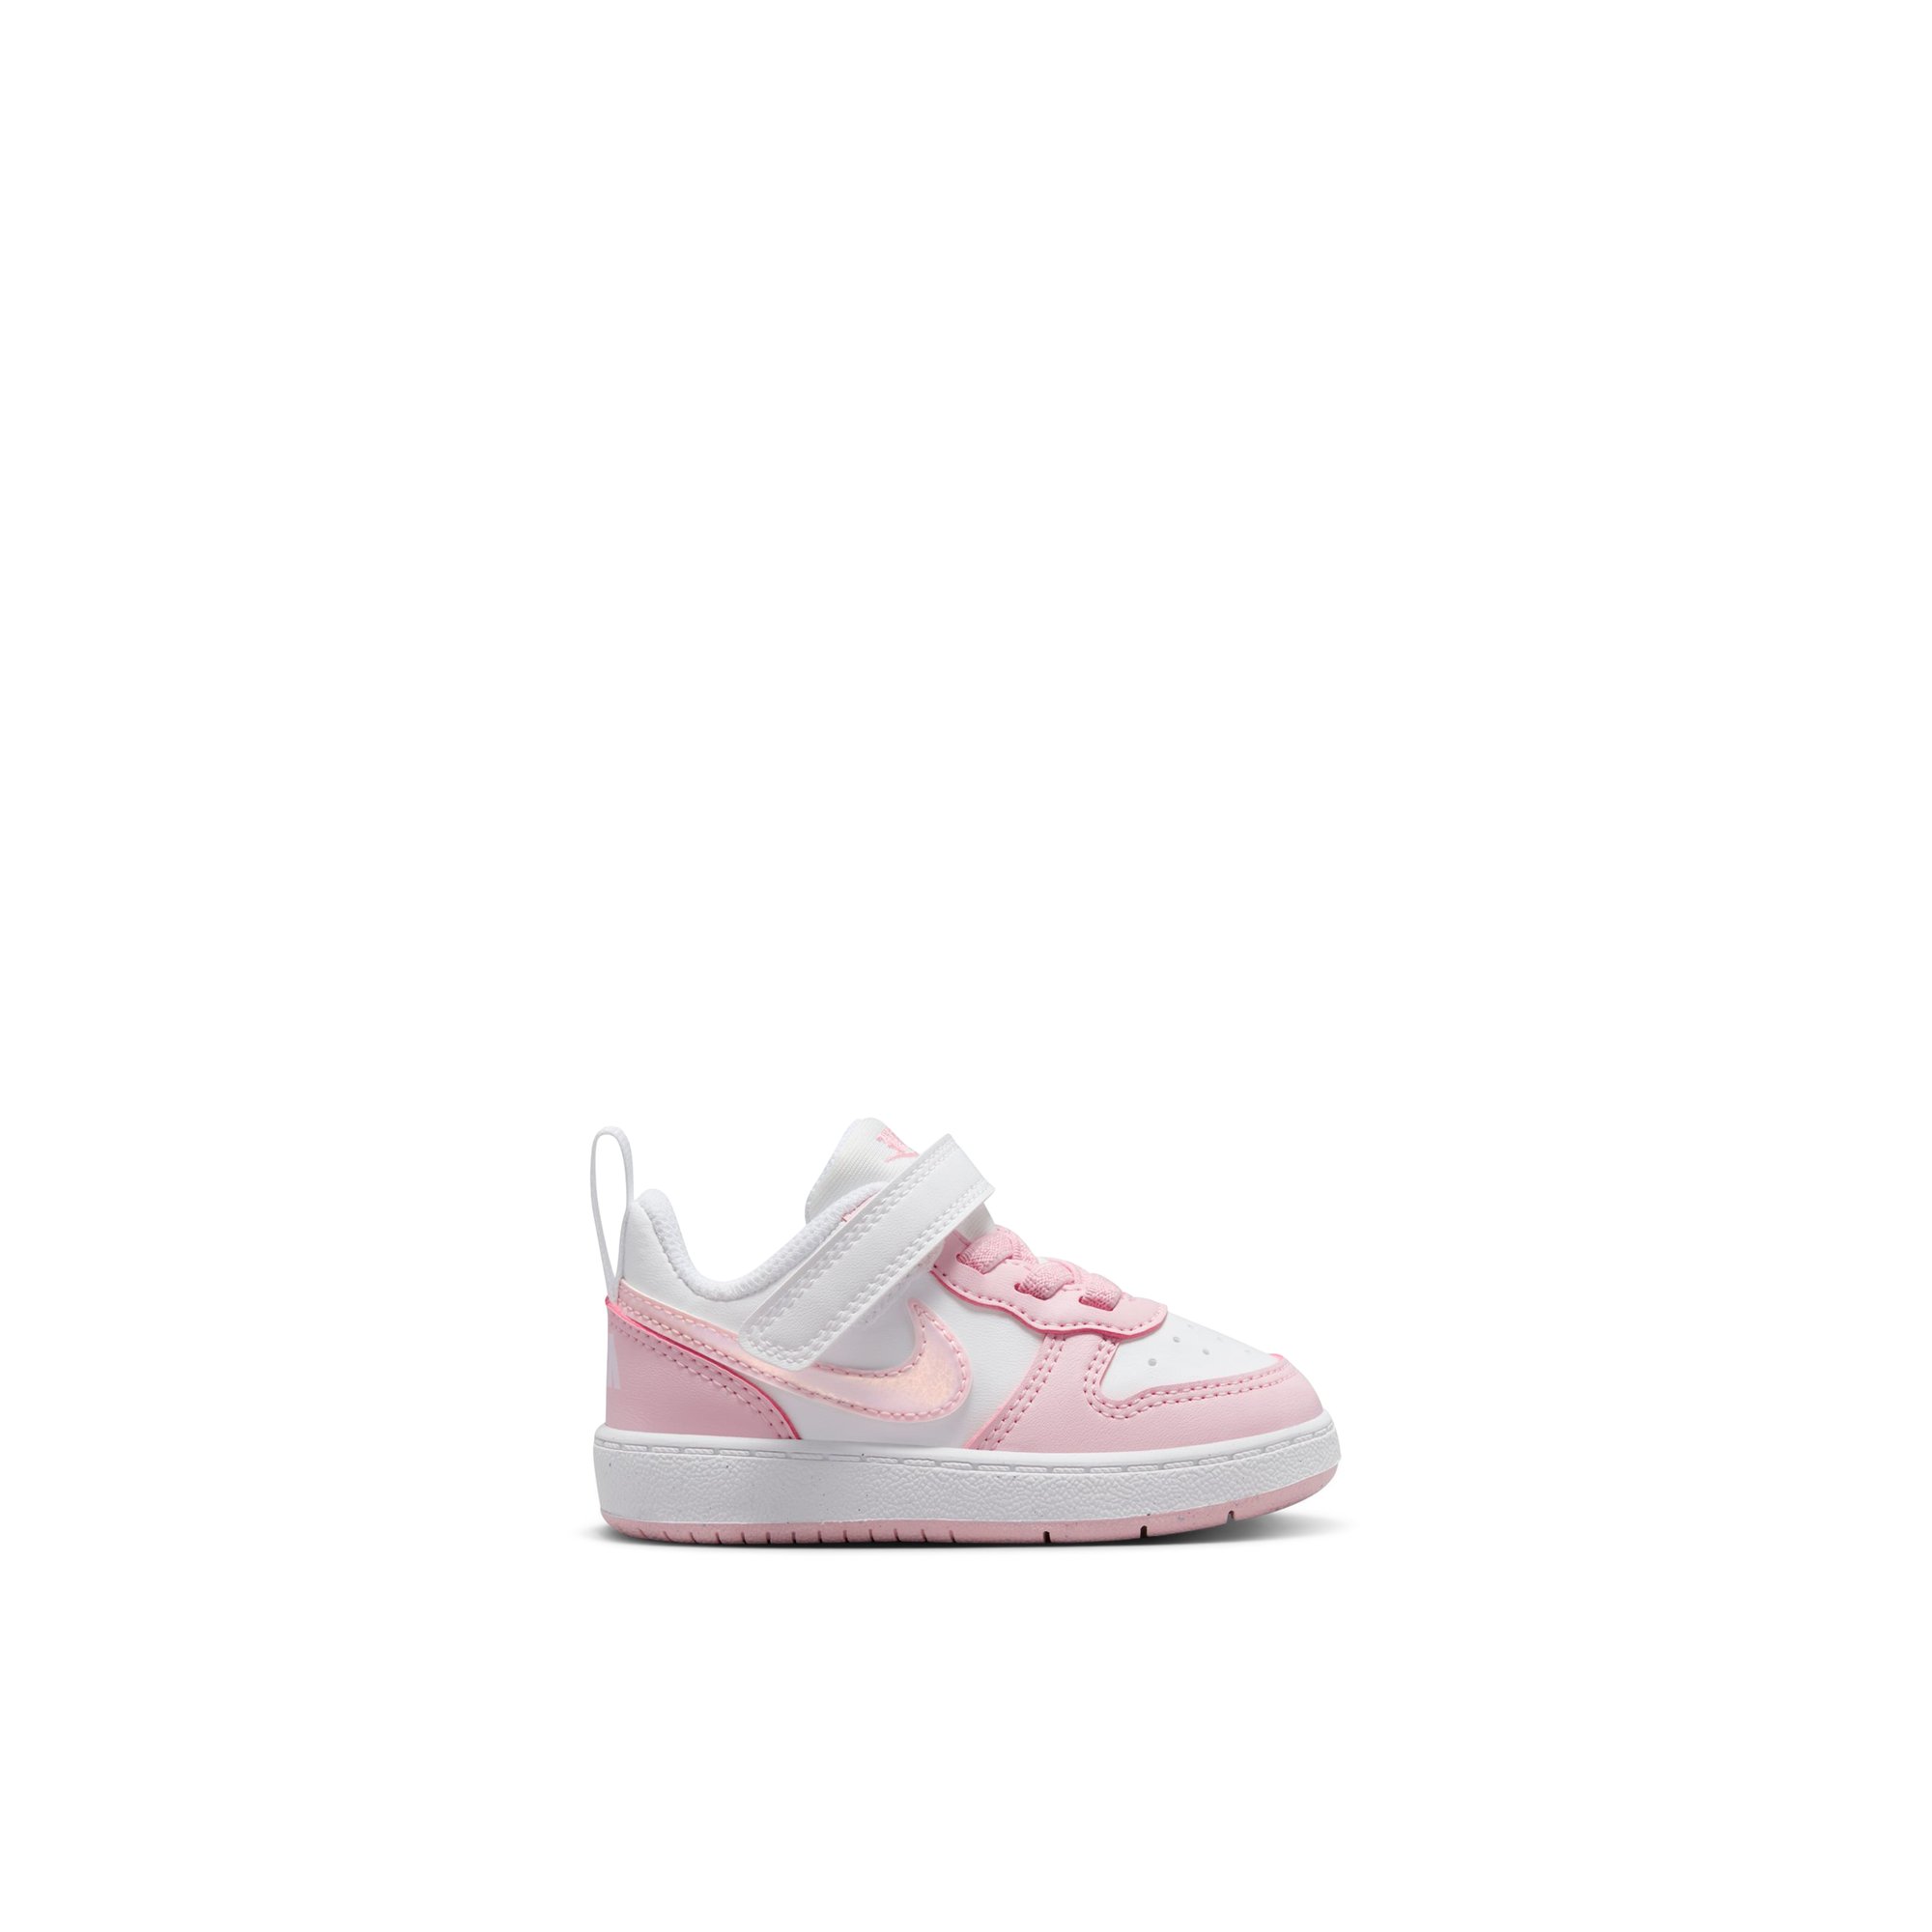 Nike Courtlo v-ig - Kids Shoes Girls Pink